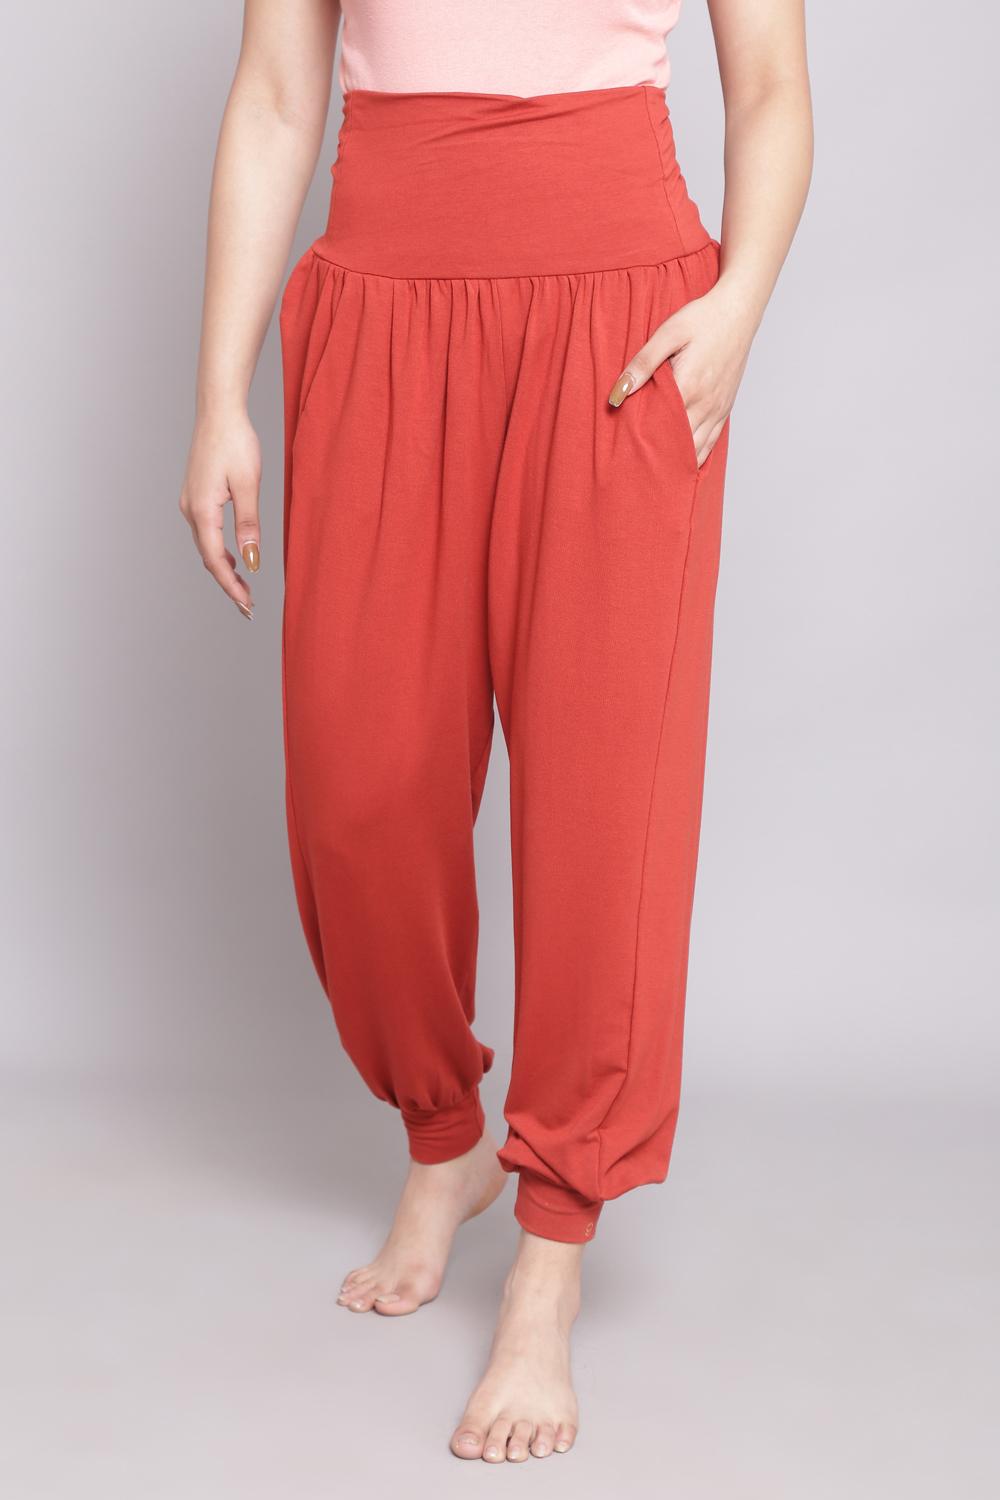 Buy Online Terracotta Viscose Polyester Jogger Pants for Women & Girls ...